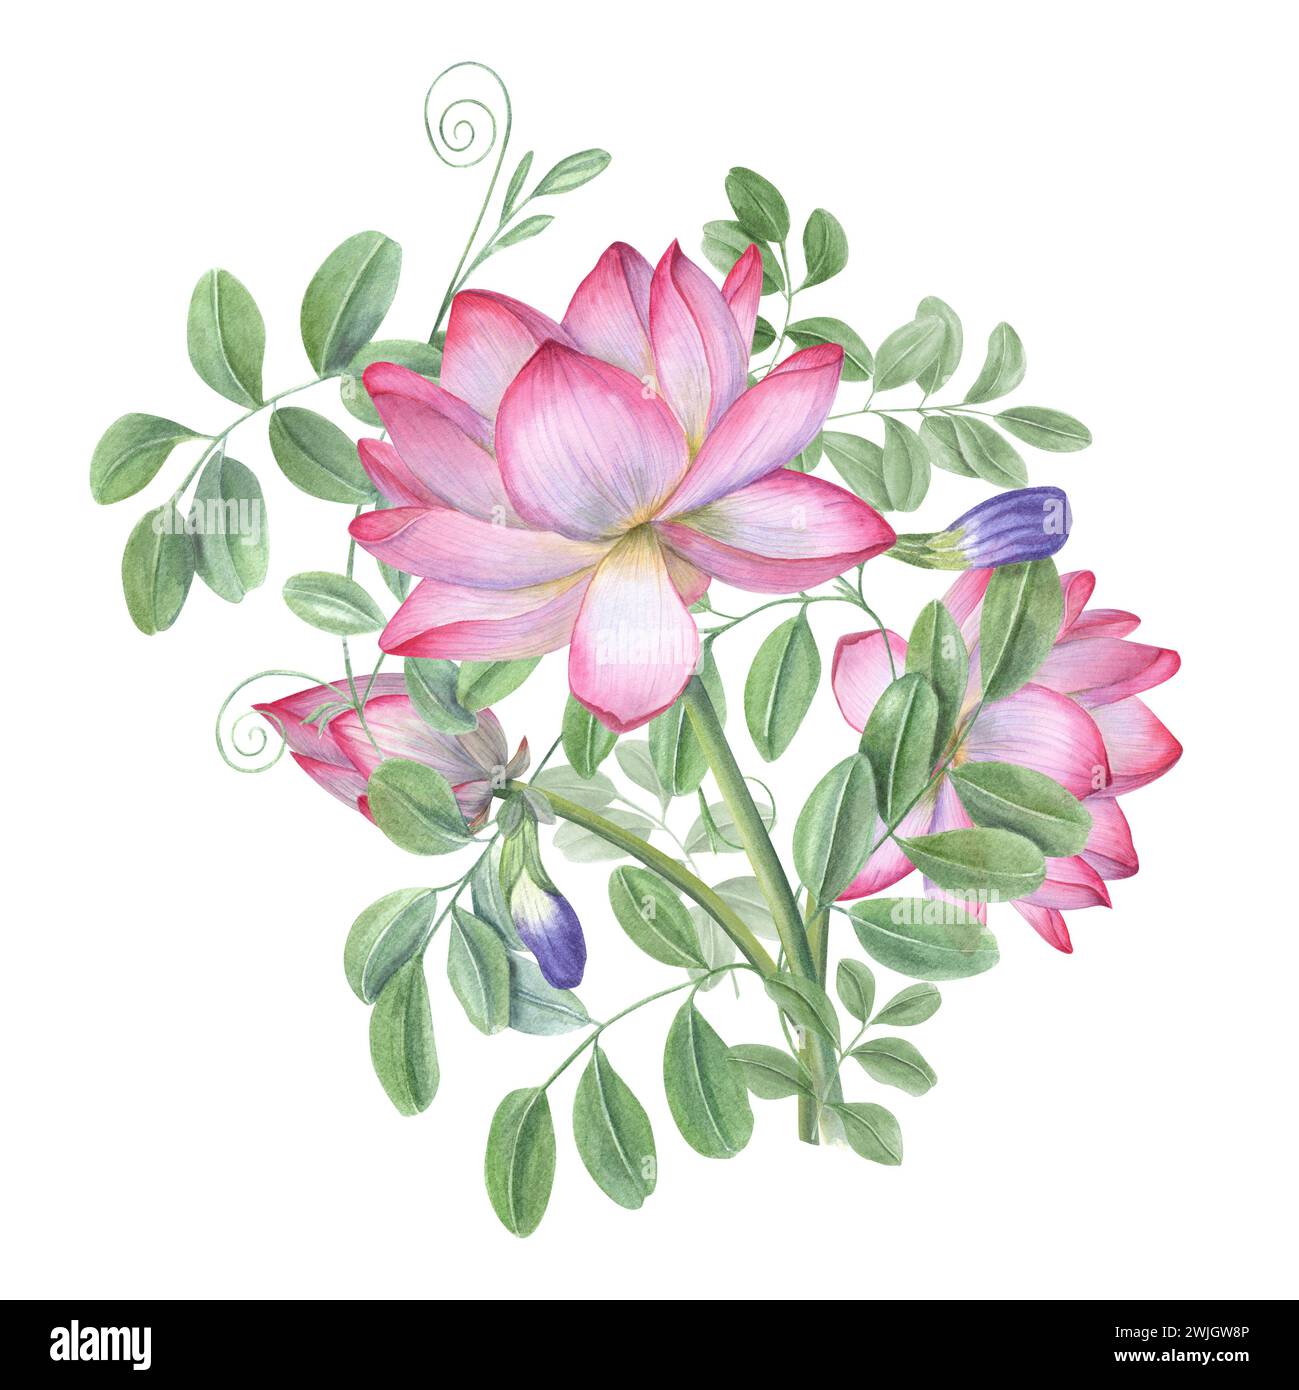 Bouquet de clitoria bleu ternatea et lotus. Fleurs en fleurs, feuilles vertes. Nénuphars, wisteria. Bourgeon, fleur, feuille, tige. Illustration aquarelle Banque D'Images